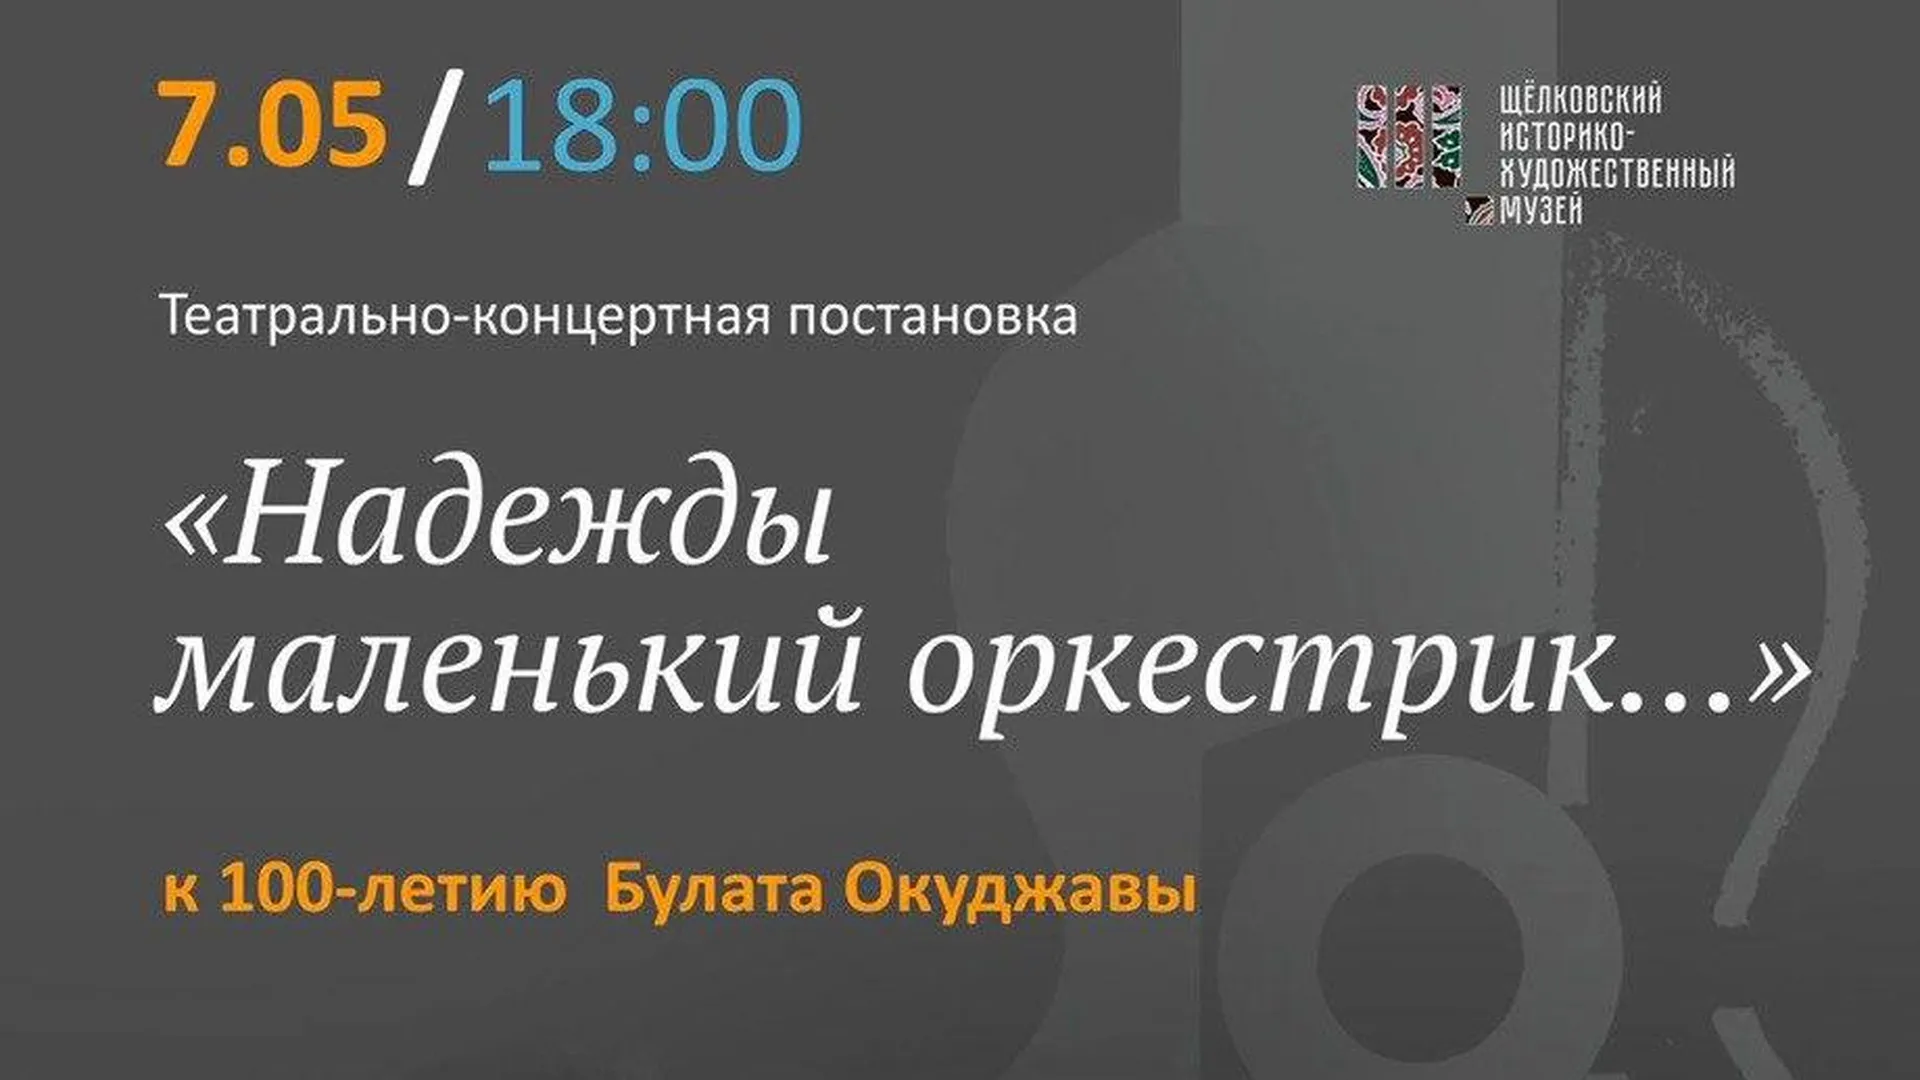 Историко-художественный музей Щелкова 7 мая проведет программы ко Дню Победы